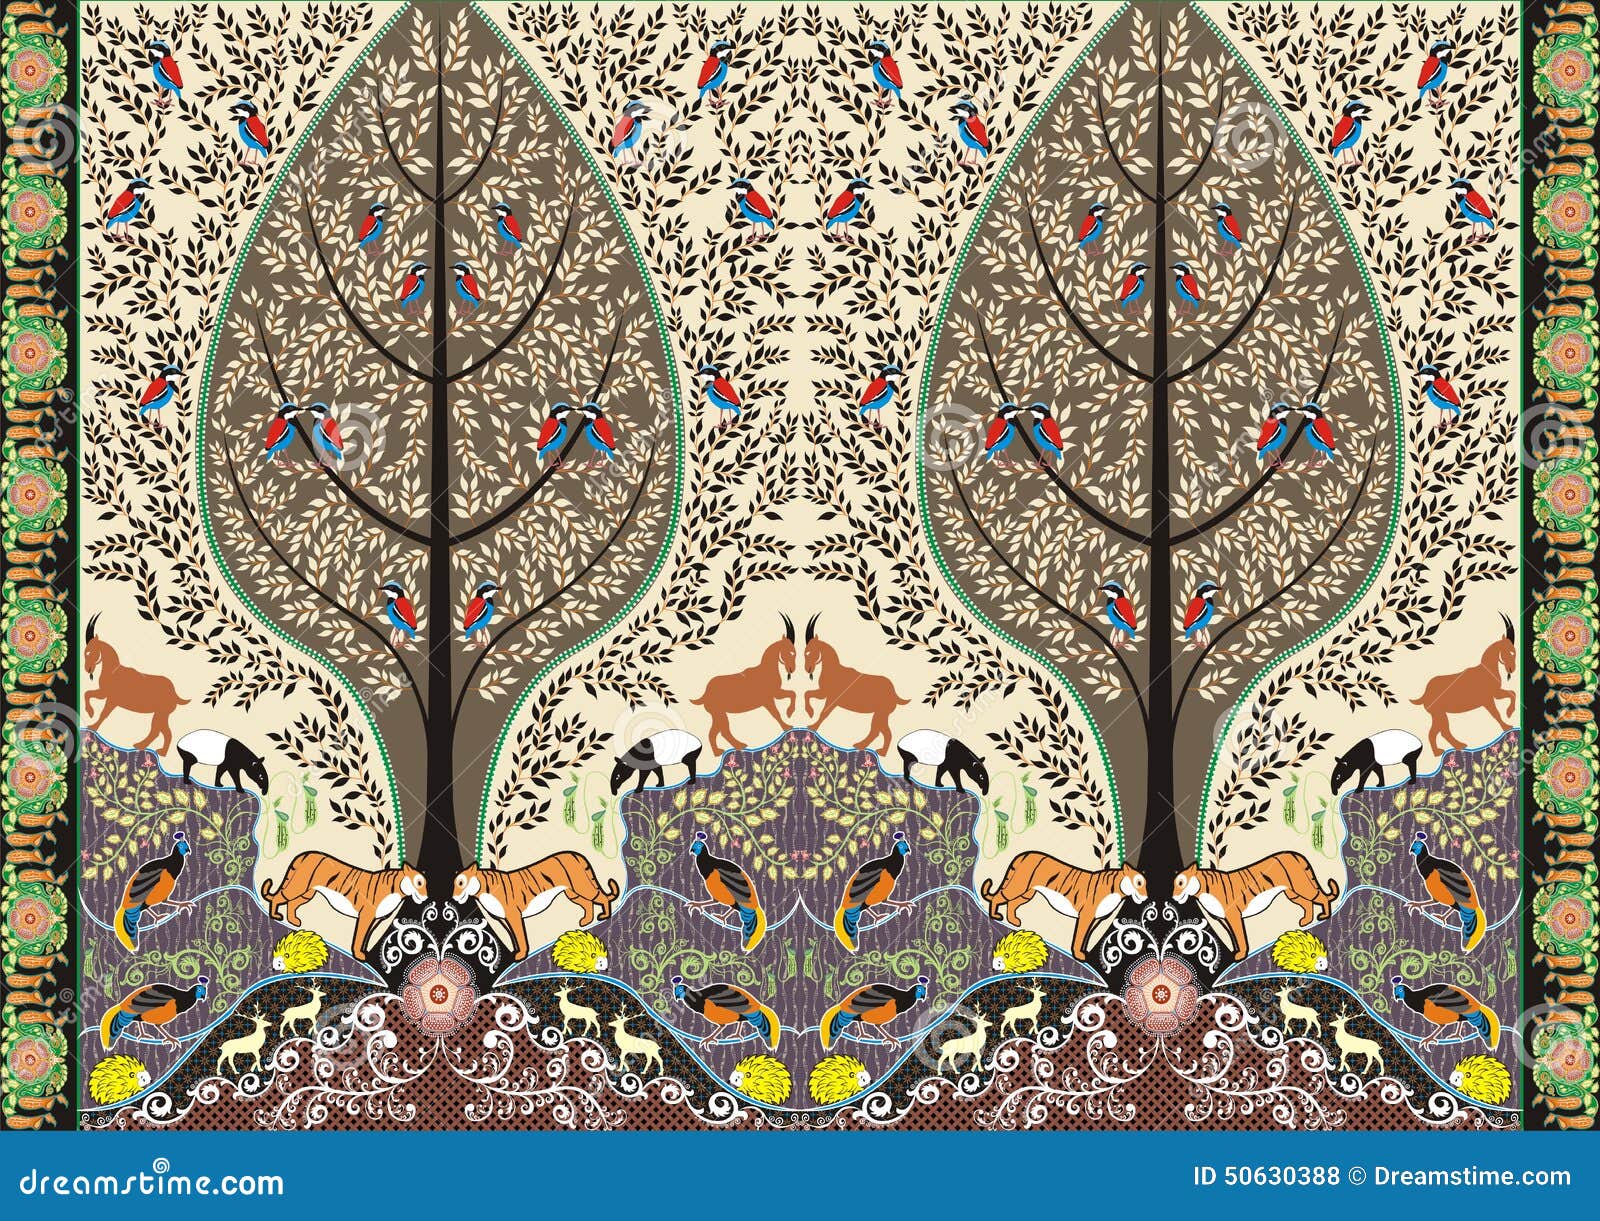 Batik forest lives motif stock illustration. Illustration of leaves ...